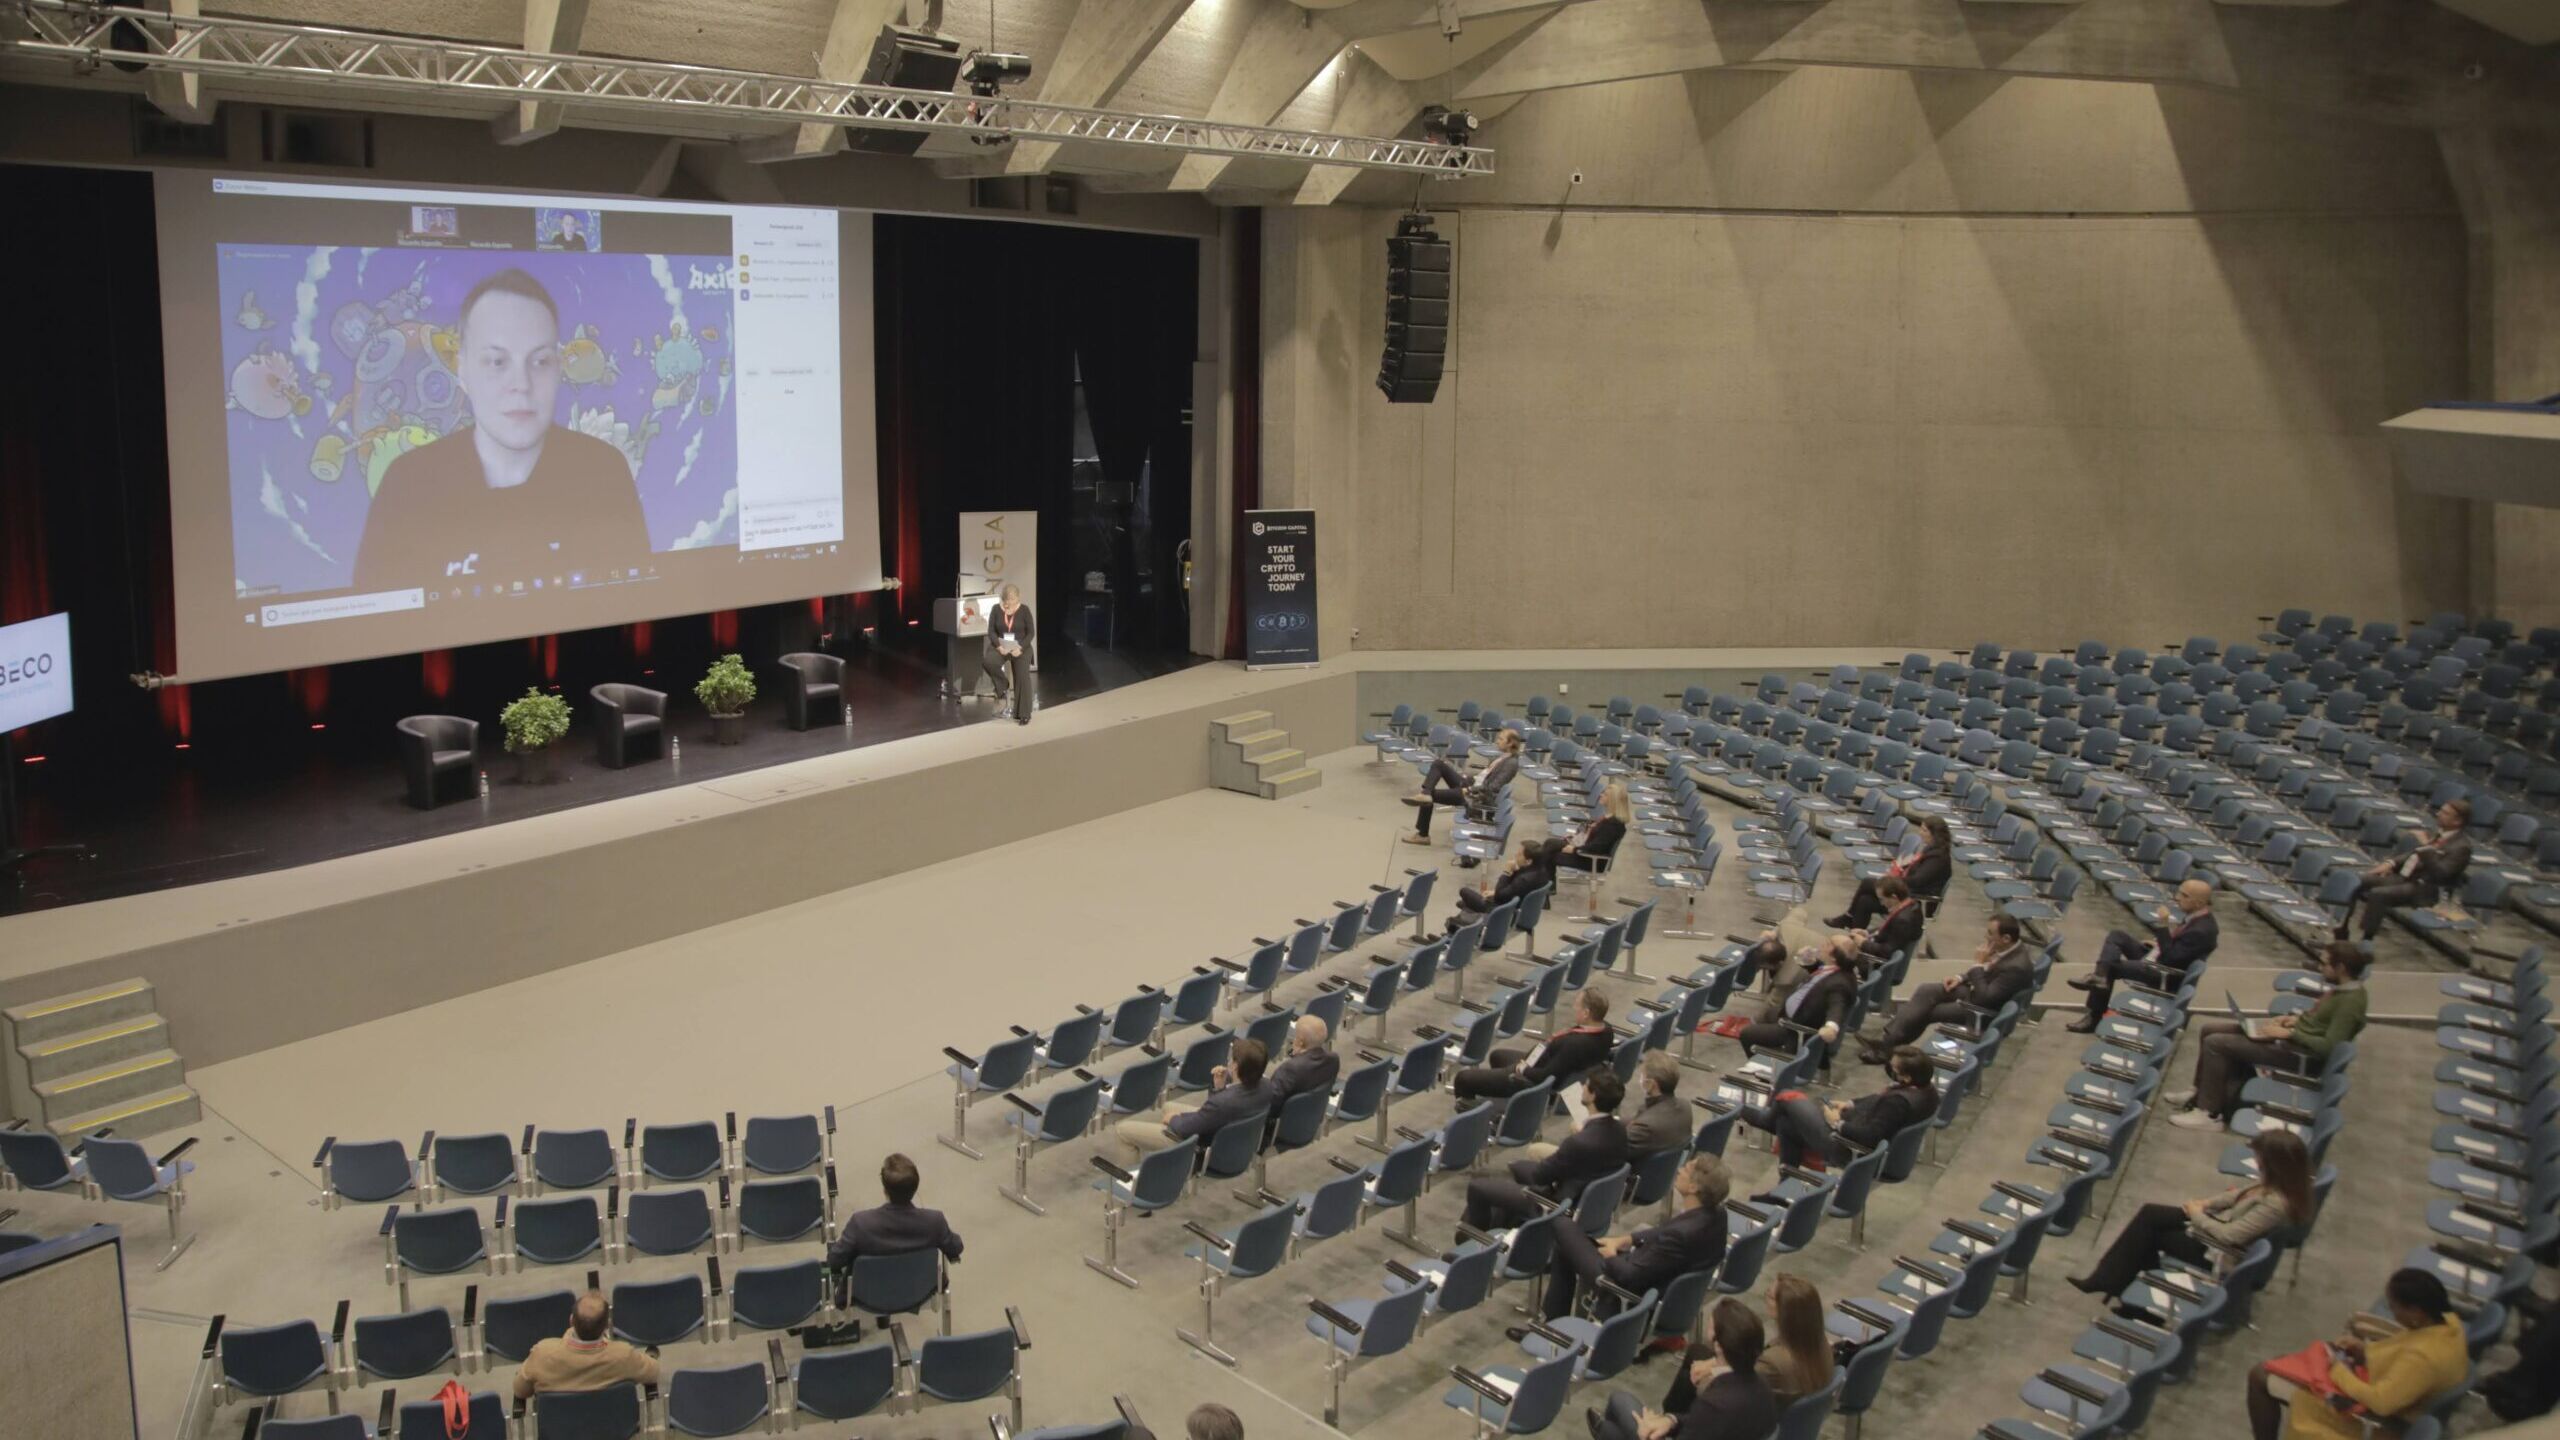 Le conferenze dell’edizione 2021 del “Lugano Finance Forum”